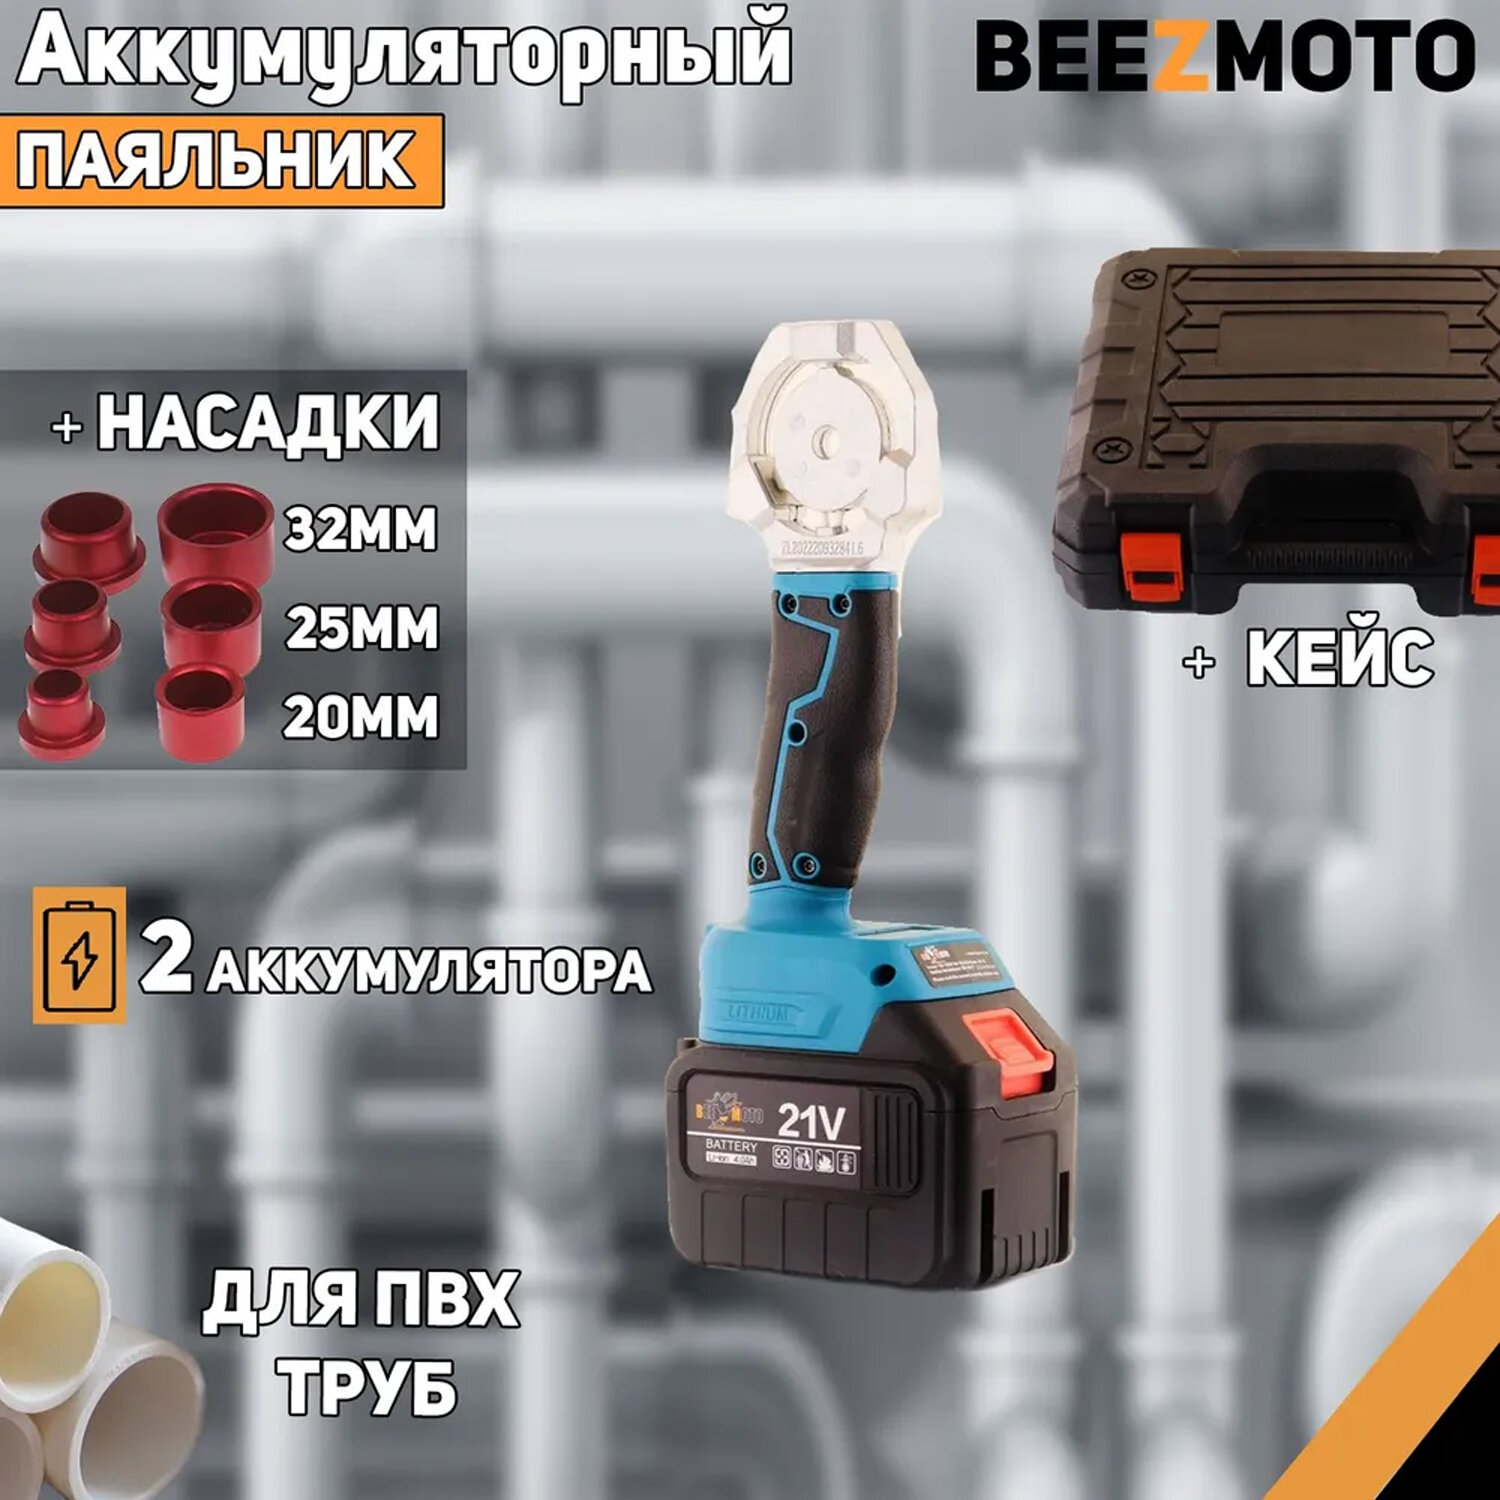 Аккумуляторный паяльник для ПВХ труб 21V (4Ah, 2 акб, ножницы, насадки 20мм, 25мм, 32мм) "BEEZMOTO"